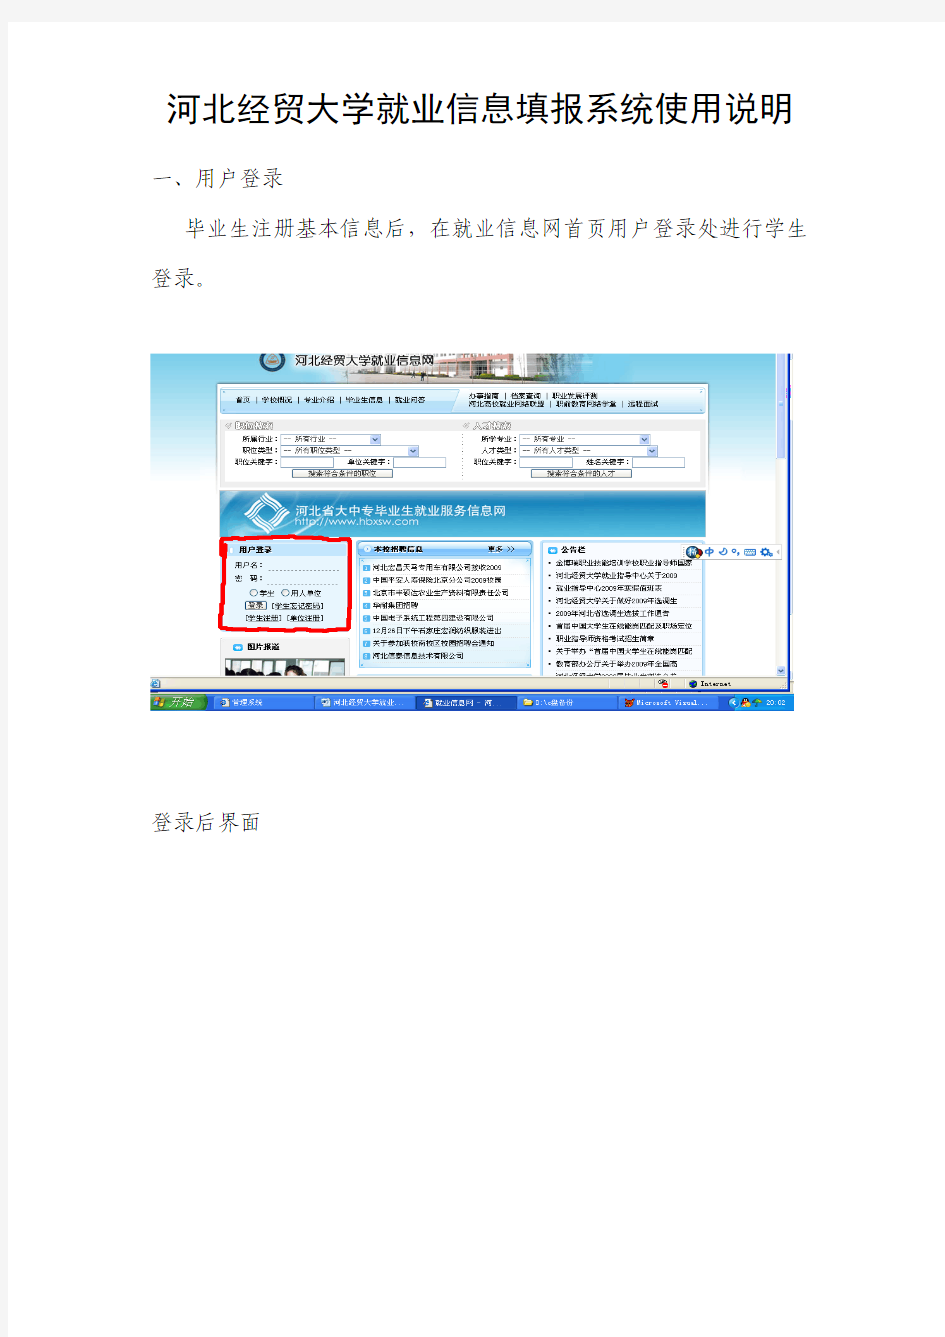 河北经贸大学就业信息填报系统使用说明